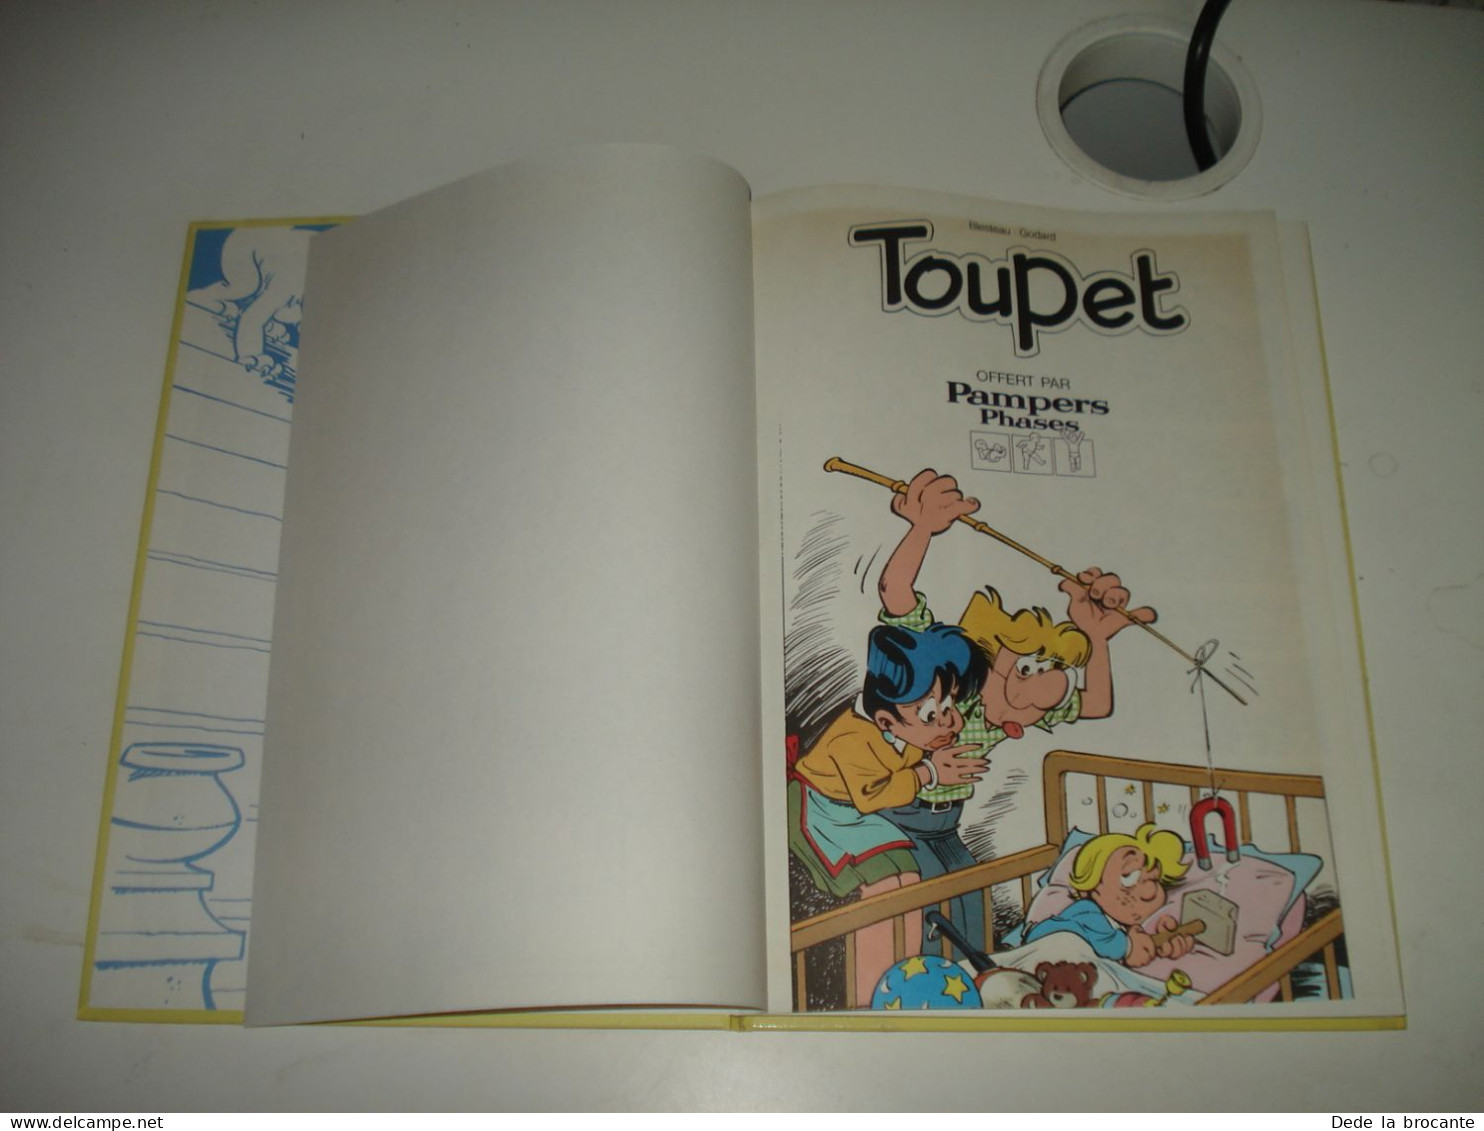 C38 / Toupet " En Tient Une Couche " E.O Publicitaire Pampers De 1979 - Toupet